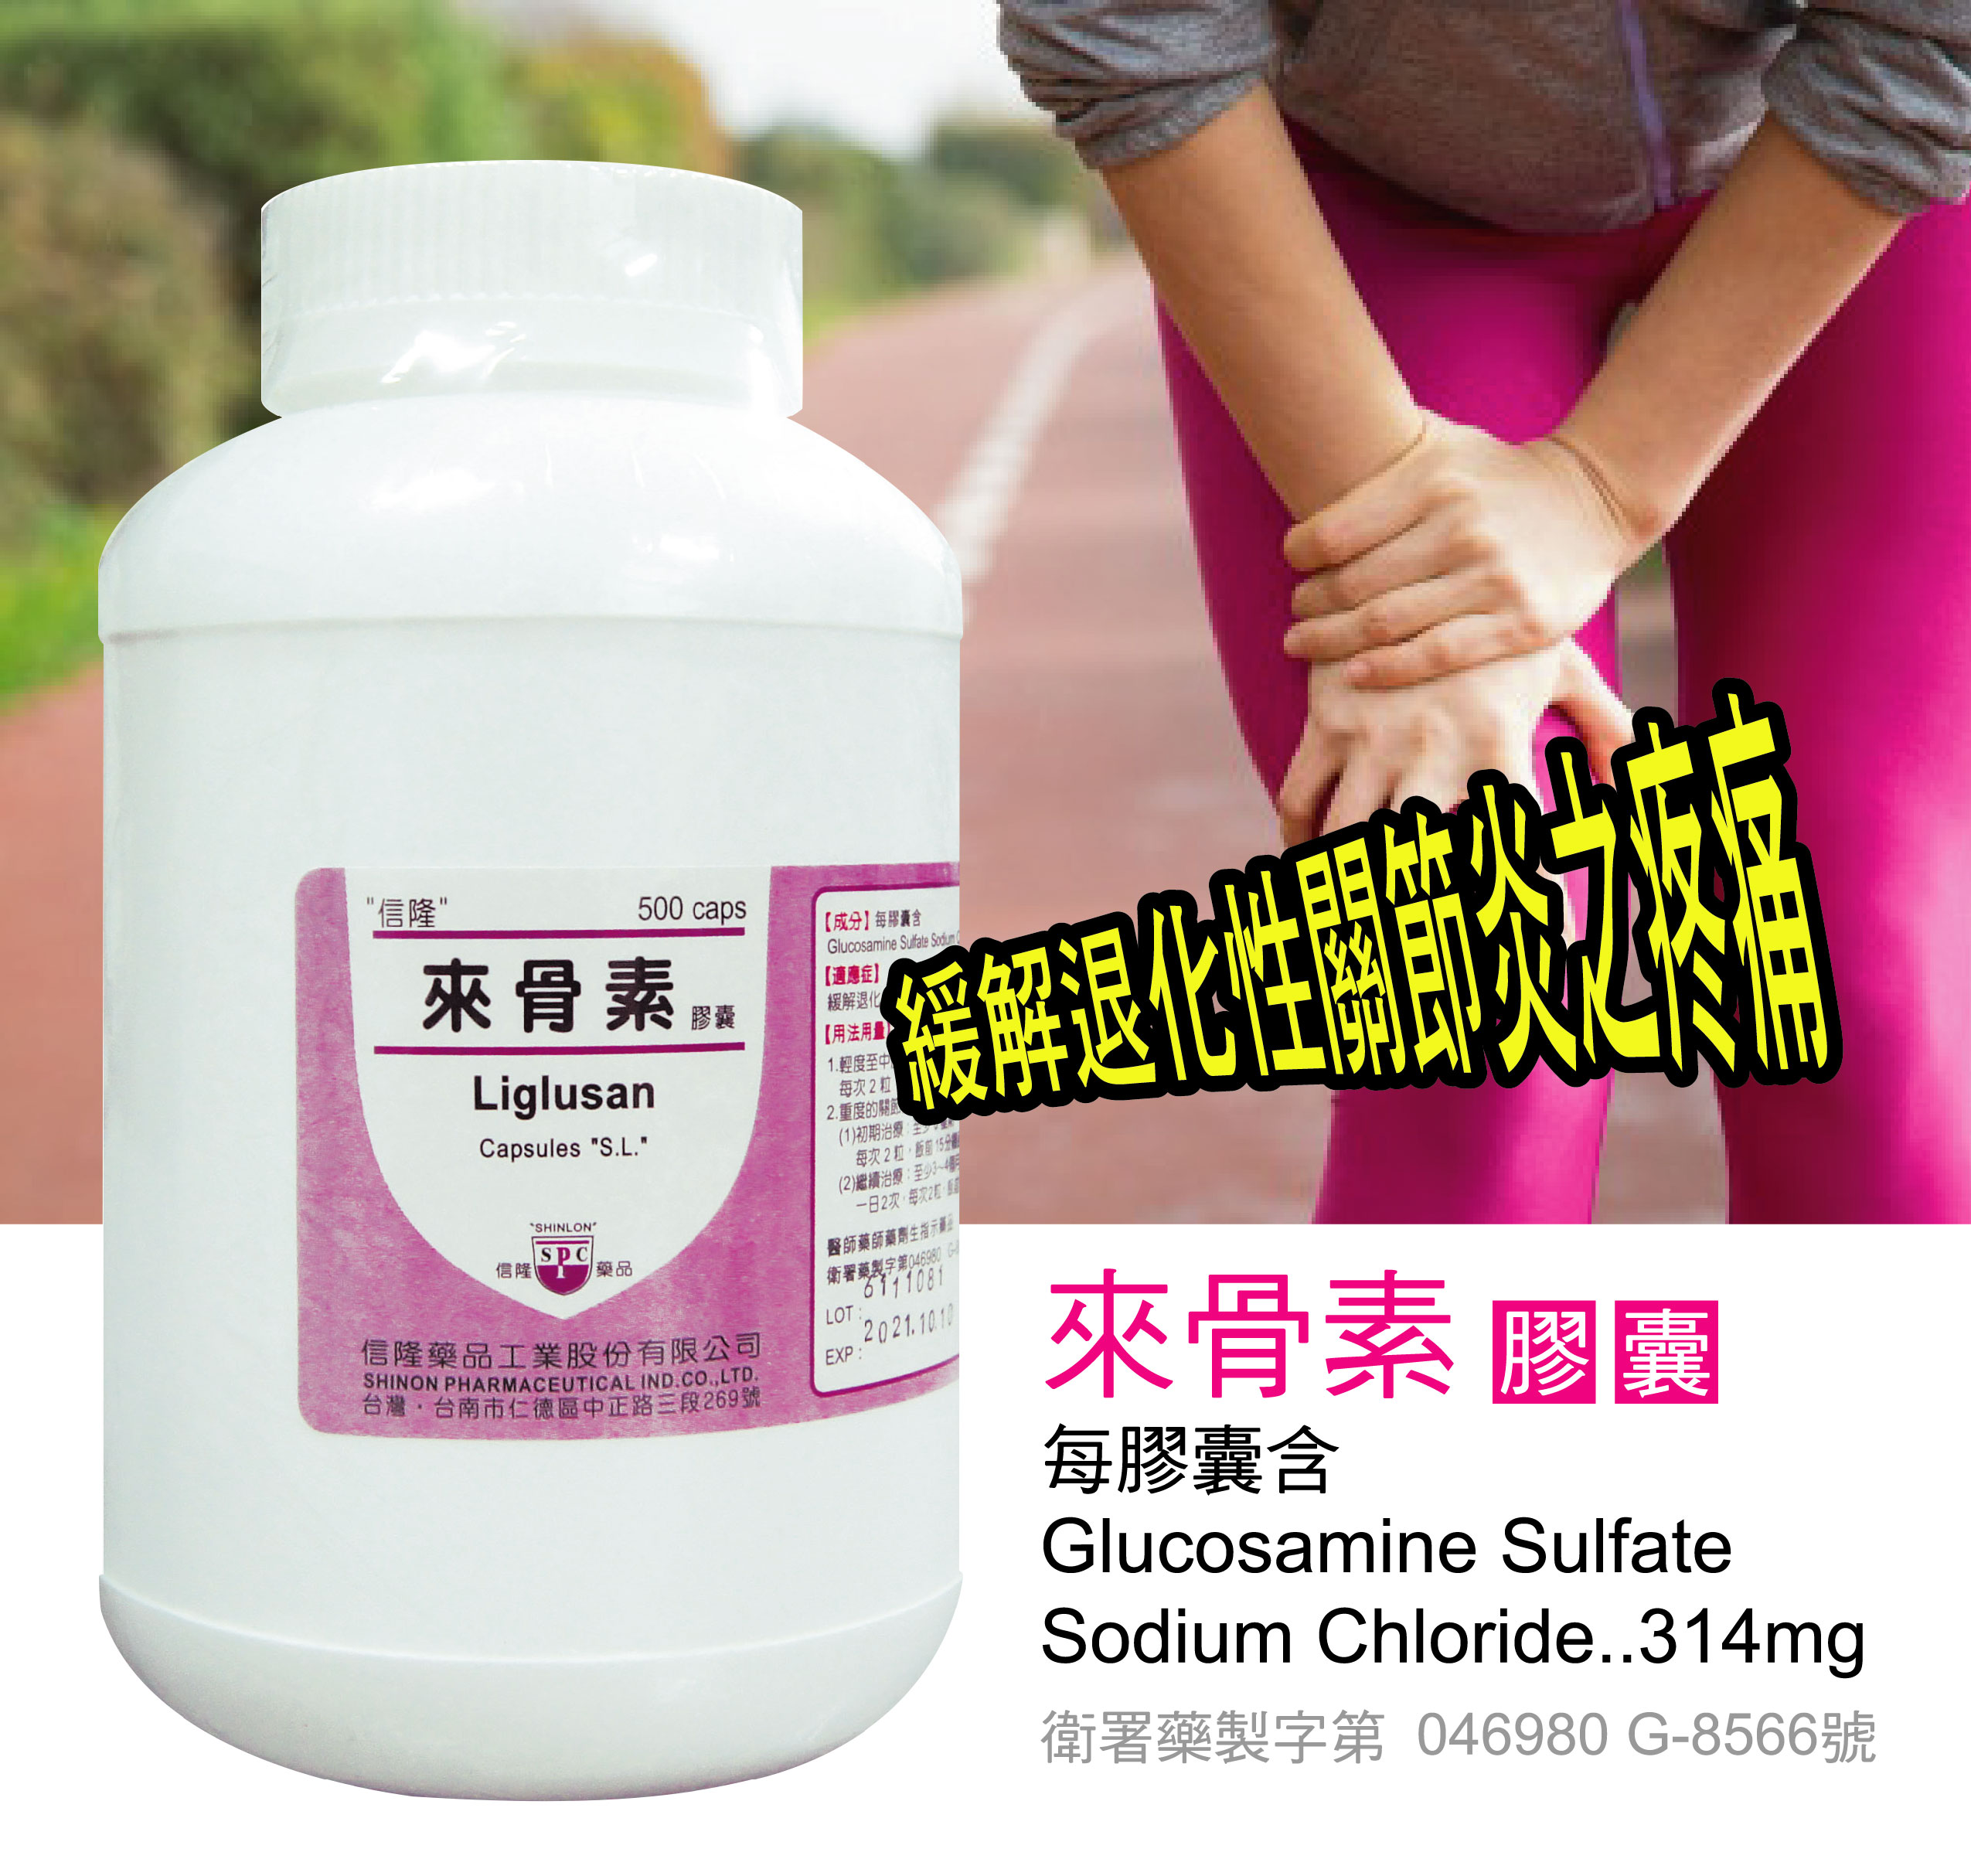 來骨素膠囊 Glucosamine Sulfate Sodium Chloride 314mg